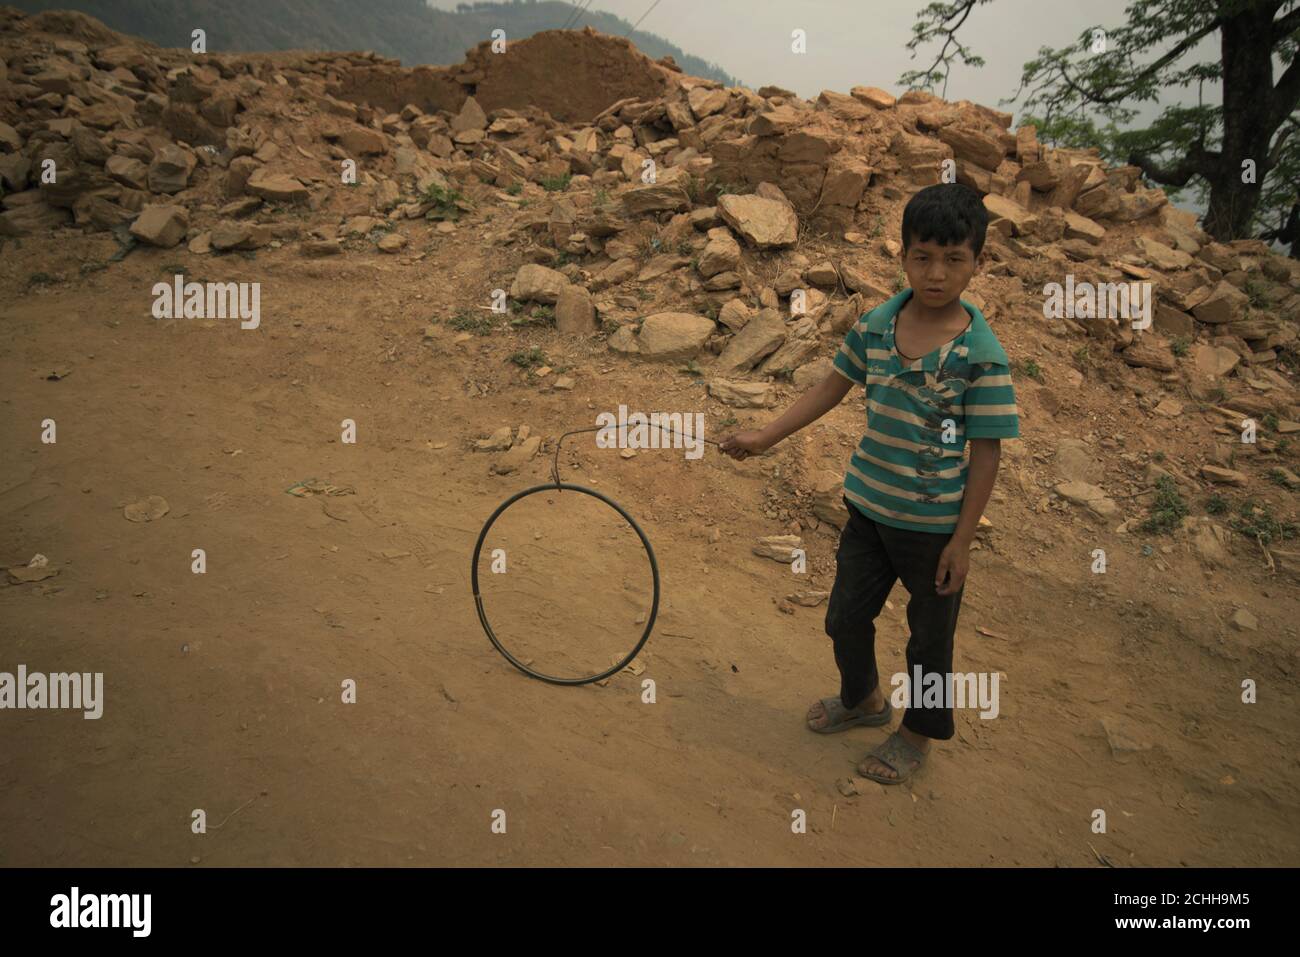 Portrait environnemental d'un enfant dans un village fortement endommagé par les tremblements de terre et les glissements de terrain de 2015 à Kavrepalanchok, Bagmati Pradesh, Népal. Banque D'Images